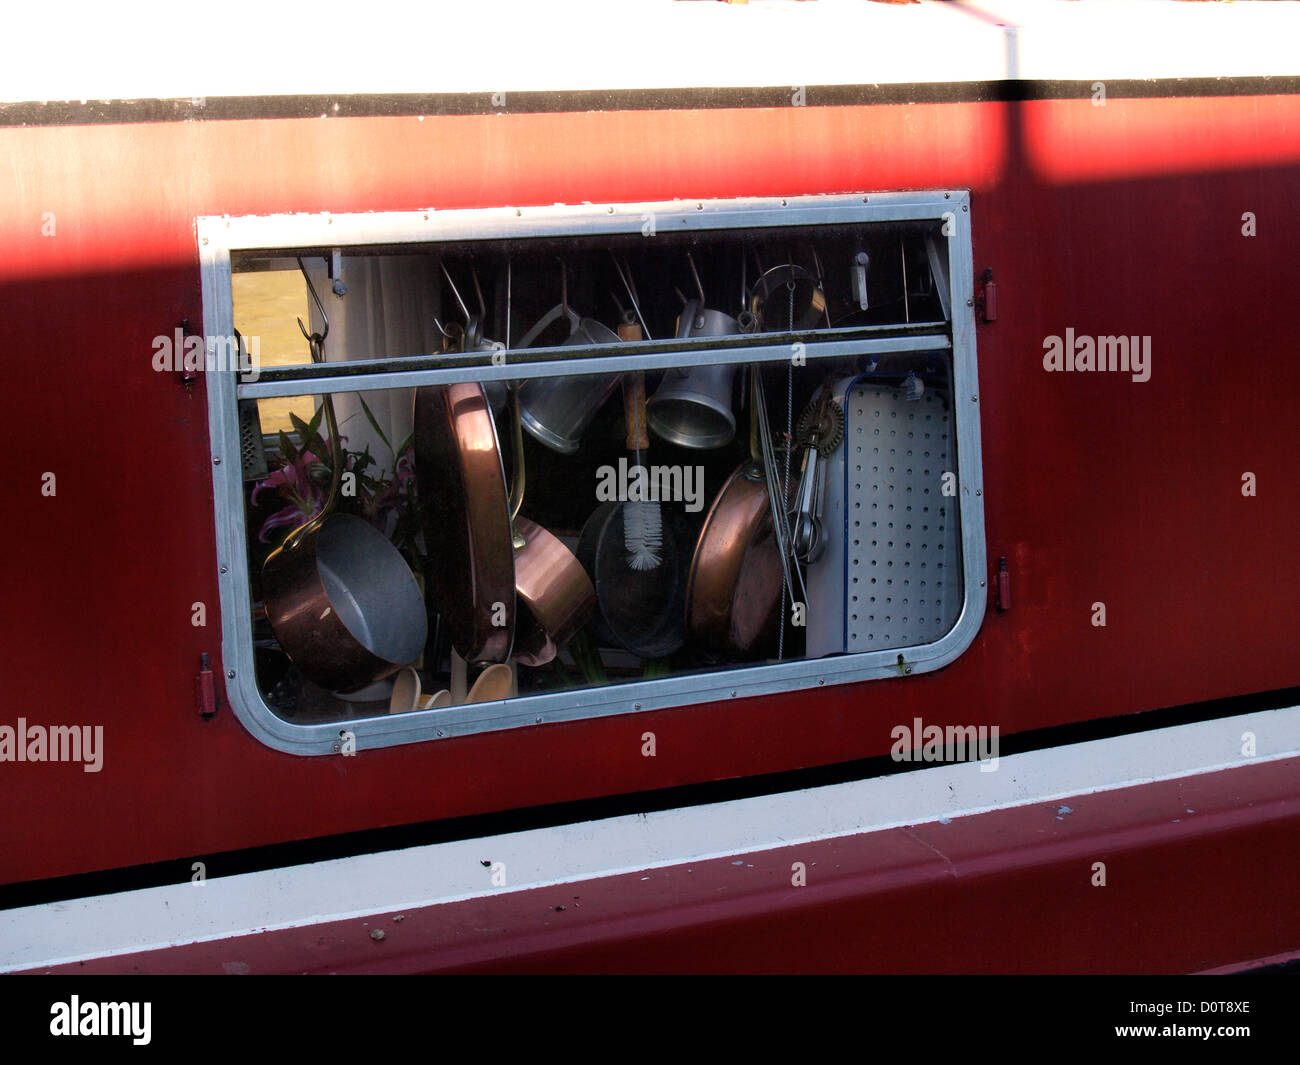 Kupfer Pfannen und Küchengeräte hängen im Fenster von einem Kanalboot, UK Stockfoto